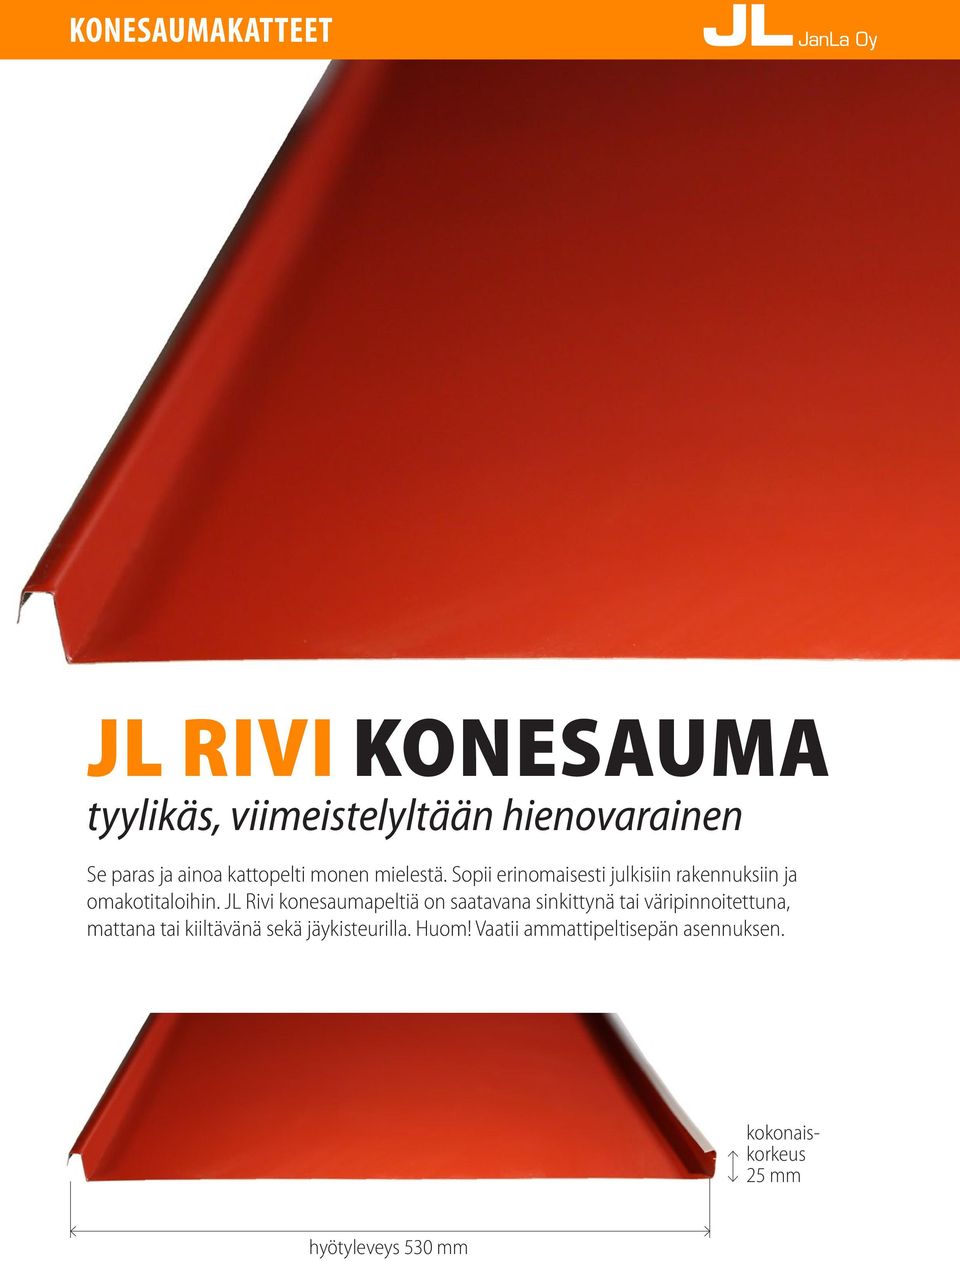 JL Rivi konesaumapeltiä on saatavana sinkittynä tai väripinnoitettuna, mattana tai kiiltävänä